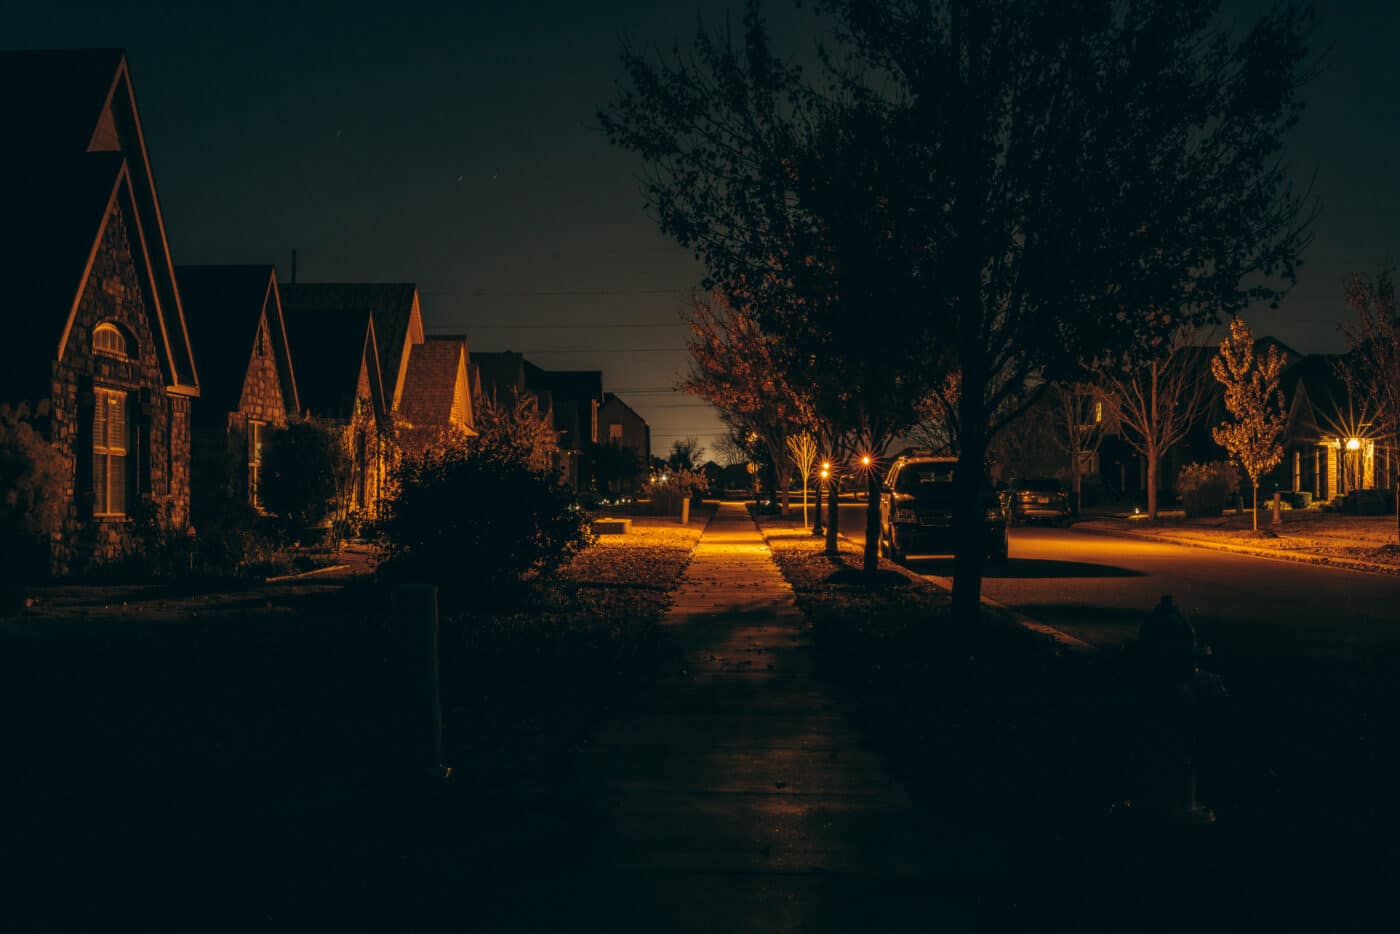 Dark neighborhood